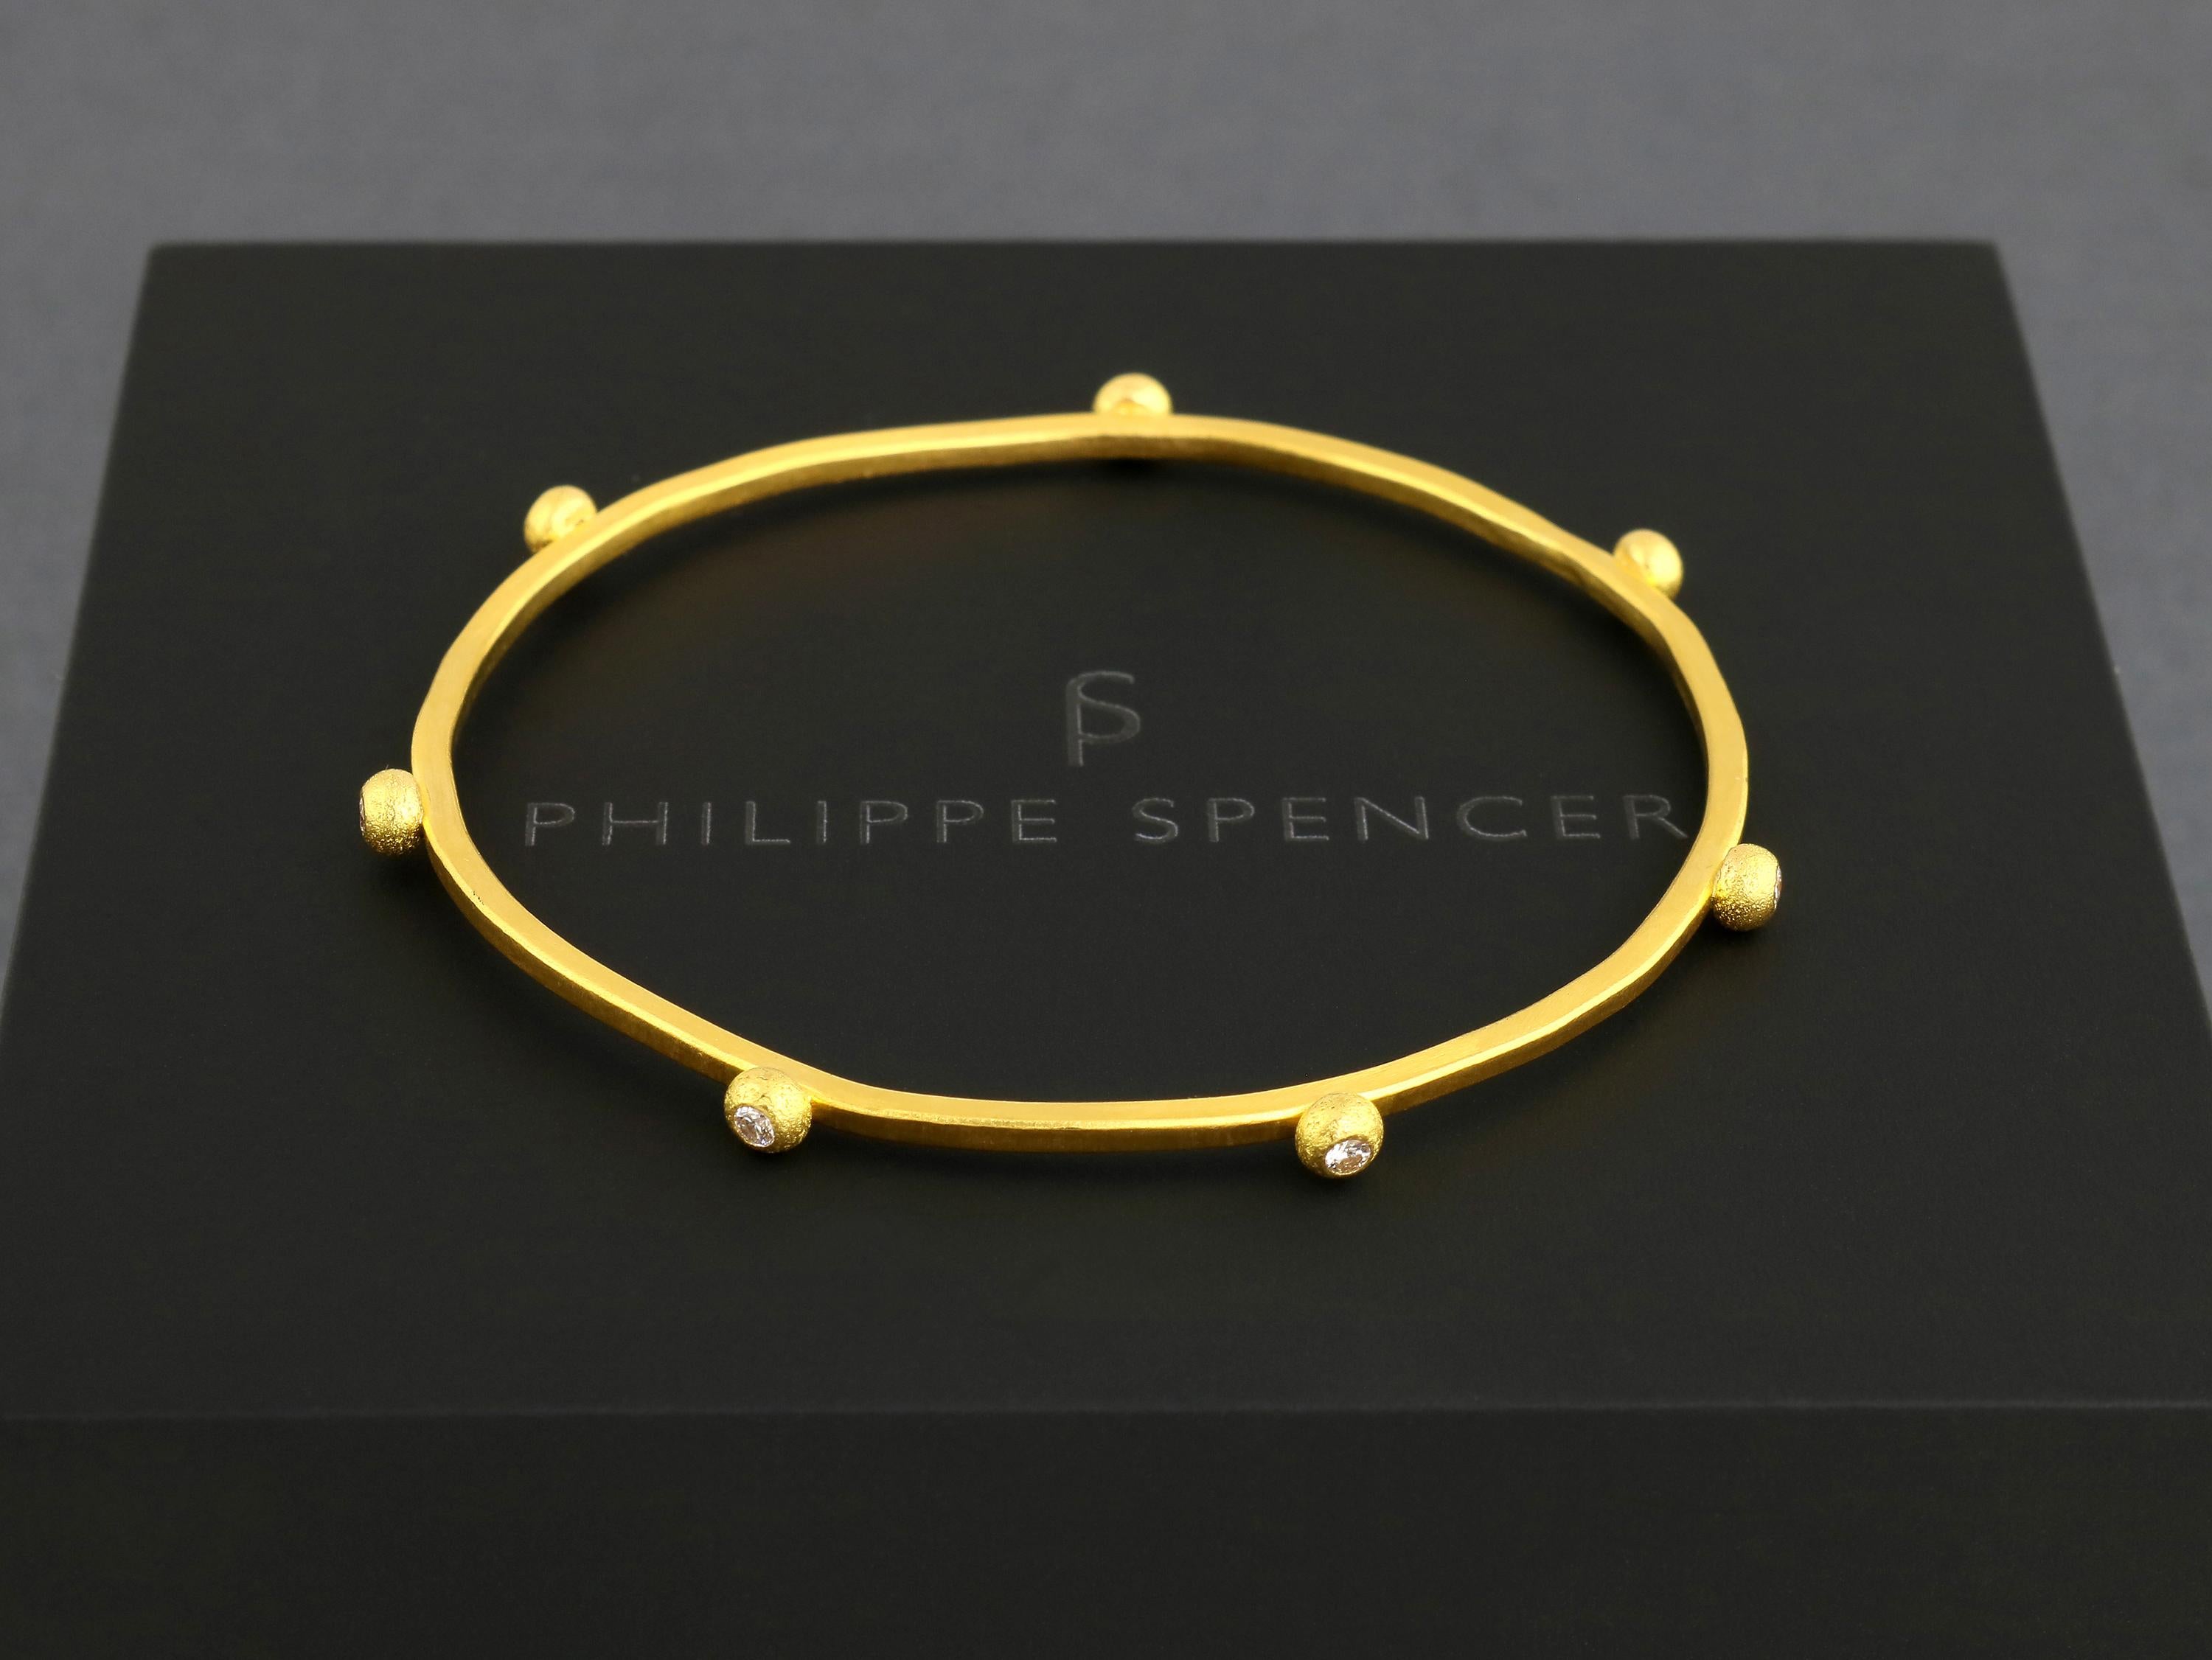 PHILIPPE SPENCER - Bracelet en or massif 24K de 2mm X 2mm entièrement forgé à la main et à l'enclume avec 7 diamants COLORLESS (D-F) ( 1/3 Ct. Total) serties dans des gouttes d'or pur 22K. Une œuvre d'art unique en son genre.  

Comme il s'agit d'or